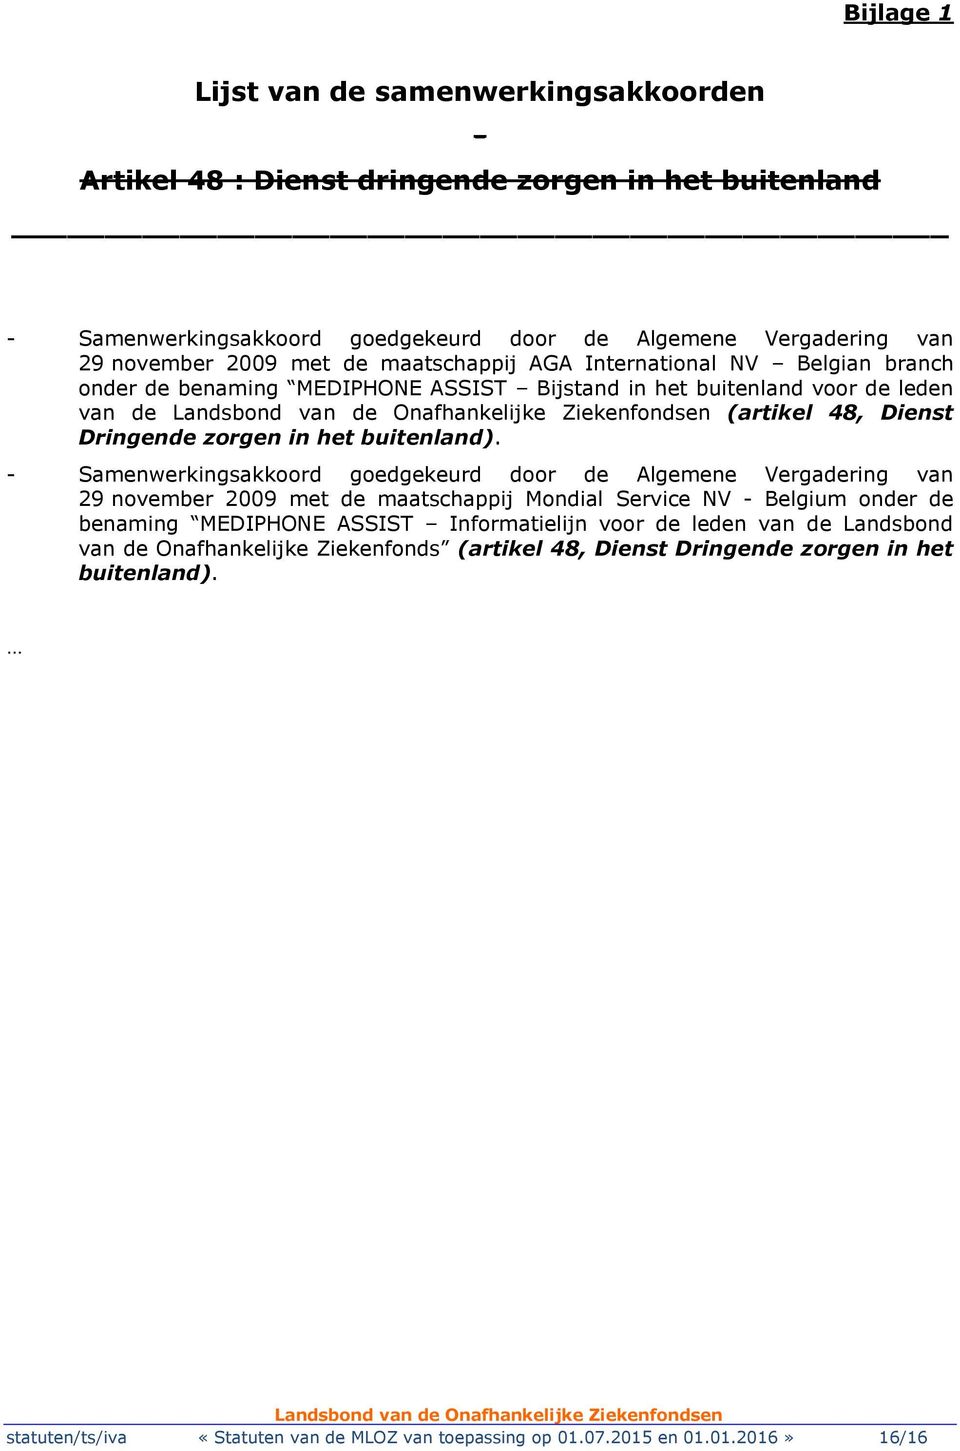 - Samenwerkingsakkoord goedgekeurd door de Algemene Vergadering van 29 november 2009 met de maatschappij Mondial Service NV - Belgium onder de benaming MEDIPHONE ASSIST Informatielijn voor de